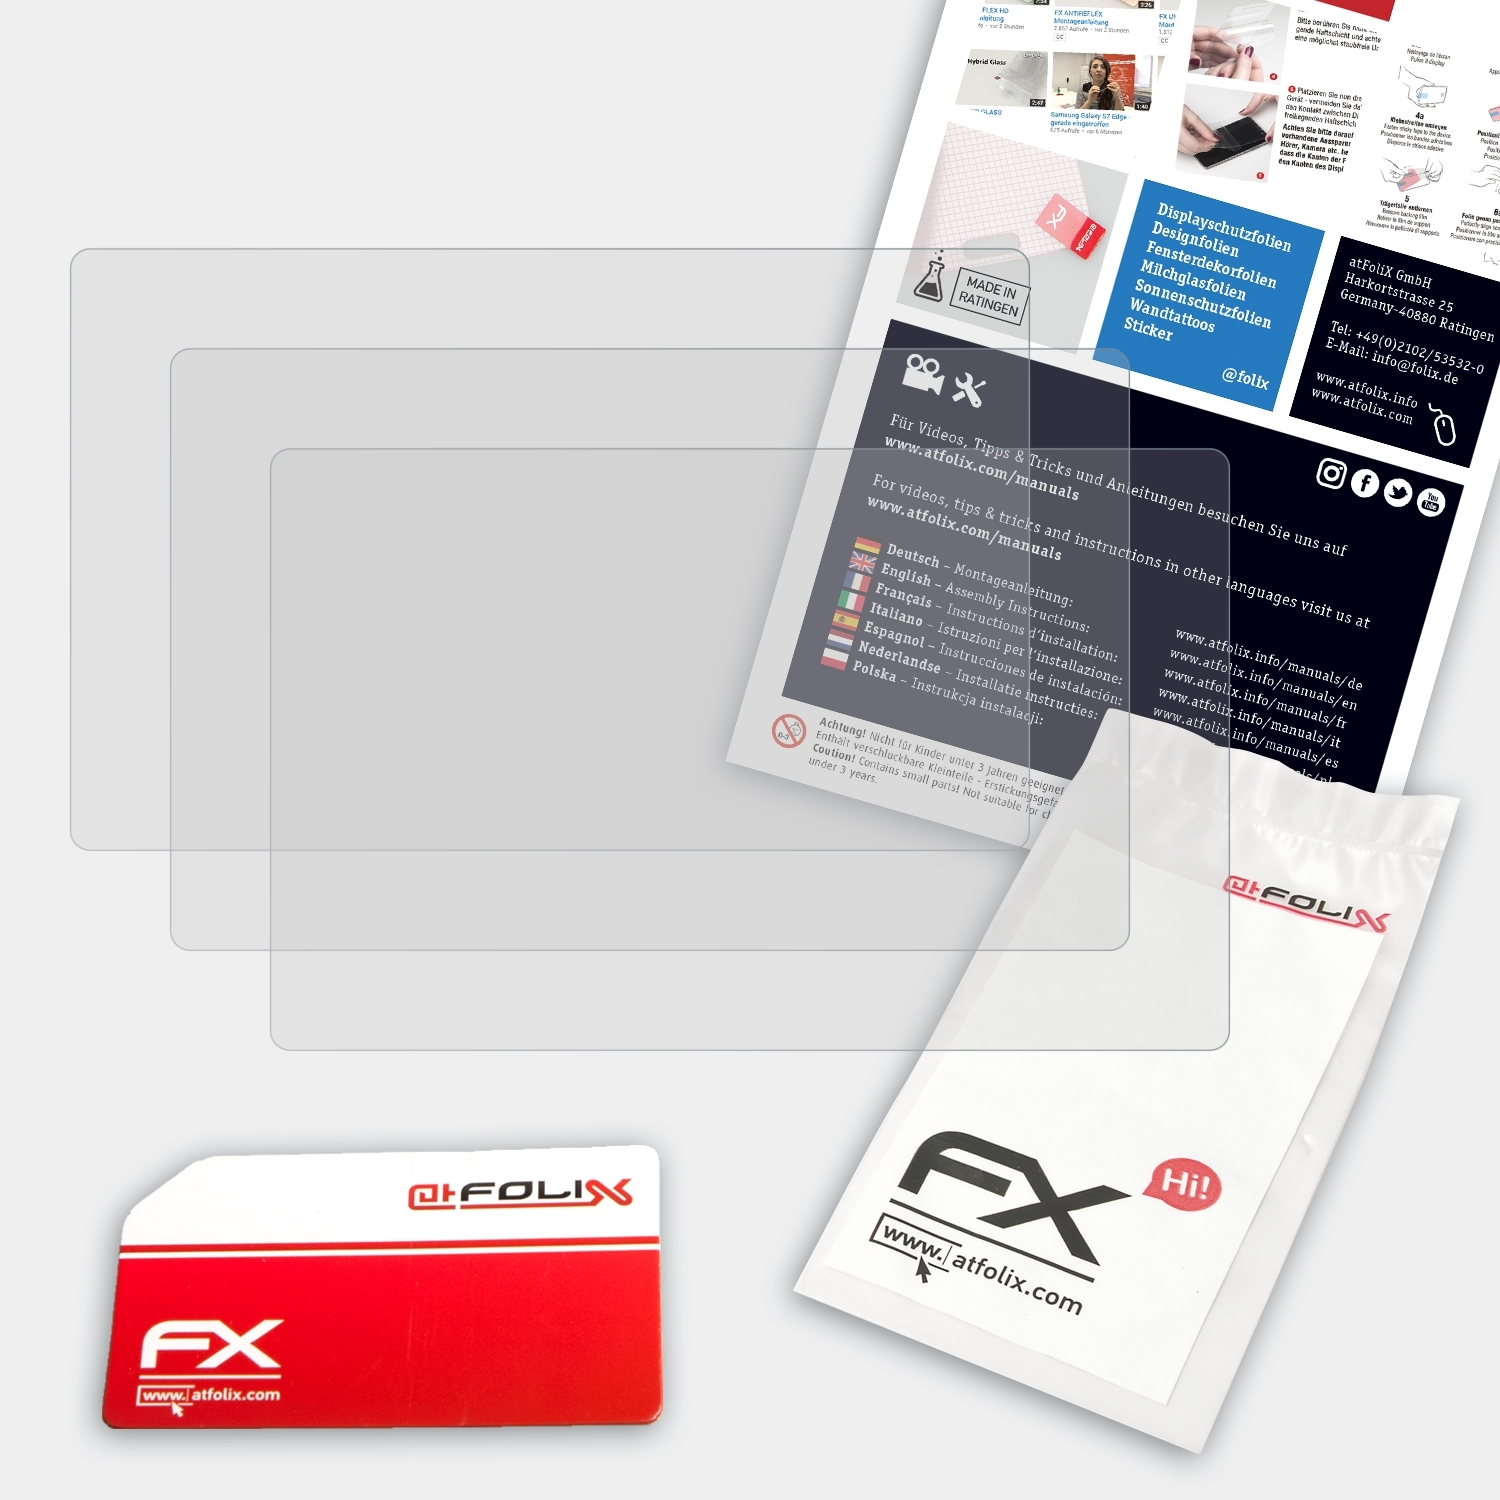 Lumix FX-Antireflex Displayschutz(für ATFOLIX DMC-G1) Panasonic 3x